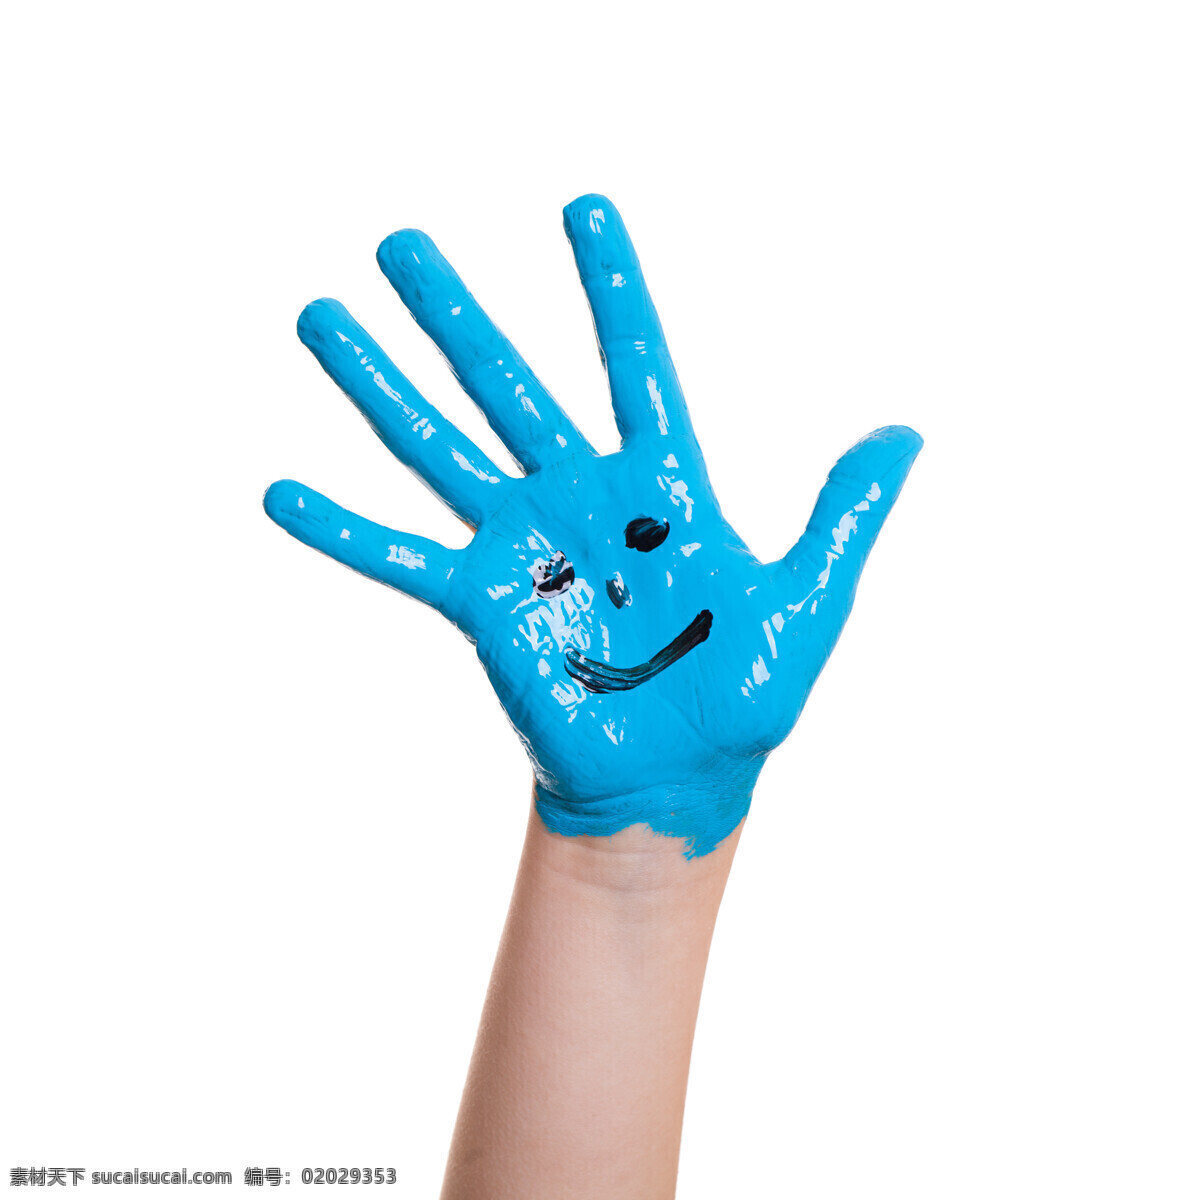 蓝色 笑脸 手掌 蓝色笑脸手掌 双手 颜料 彩色颜料 彩色手掌 美术 涂鸦的手 笑脸手掌 人体器官图 人物图片